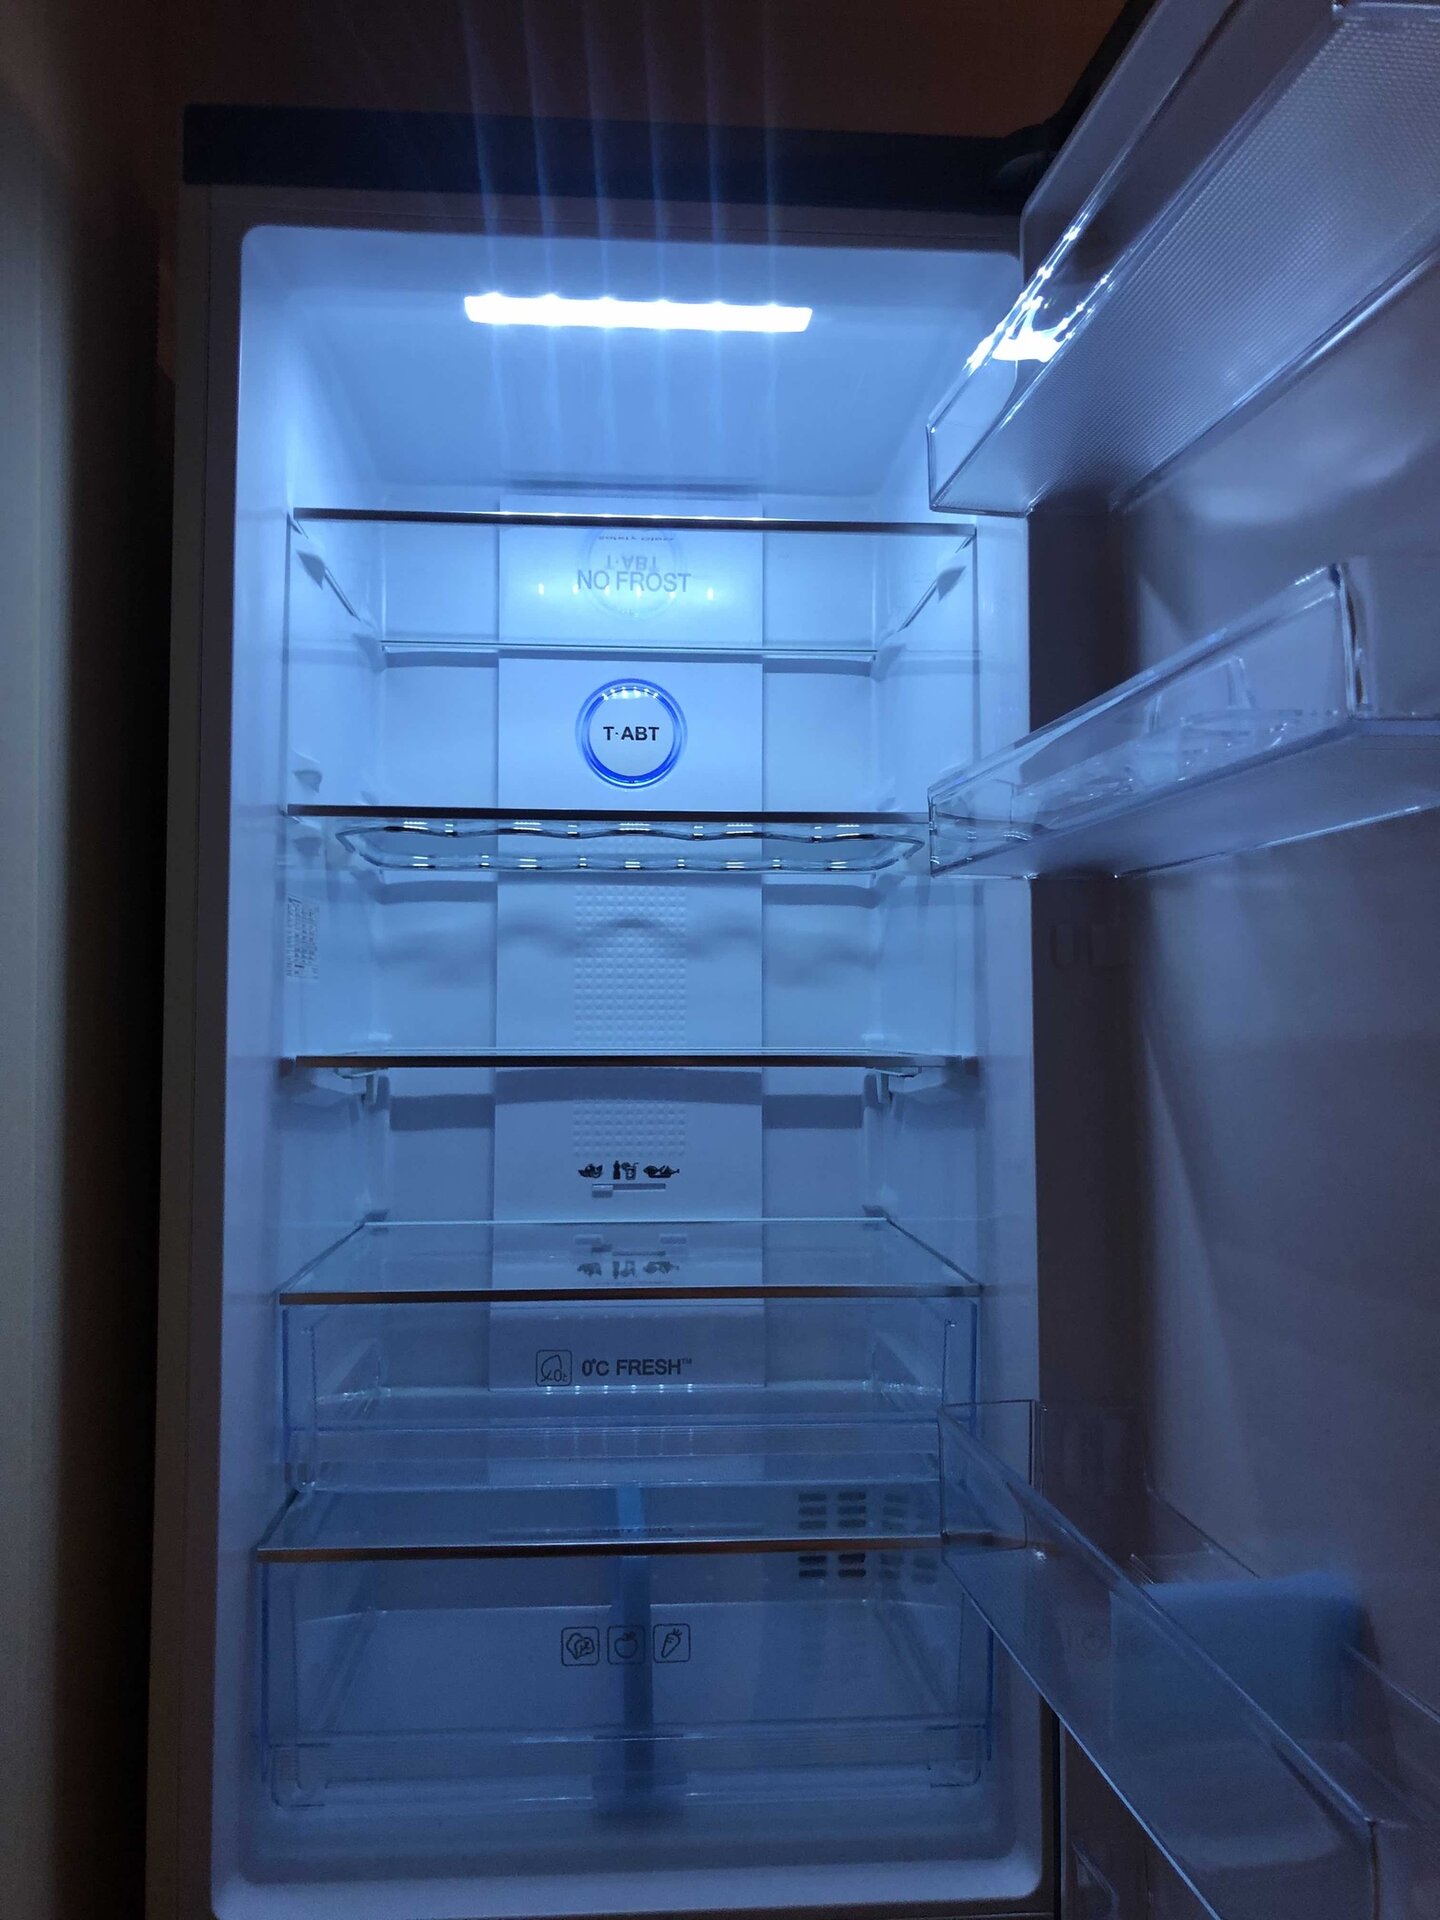 4 полки в морозилке холодильника